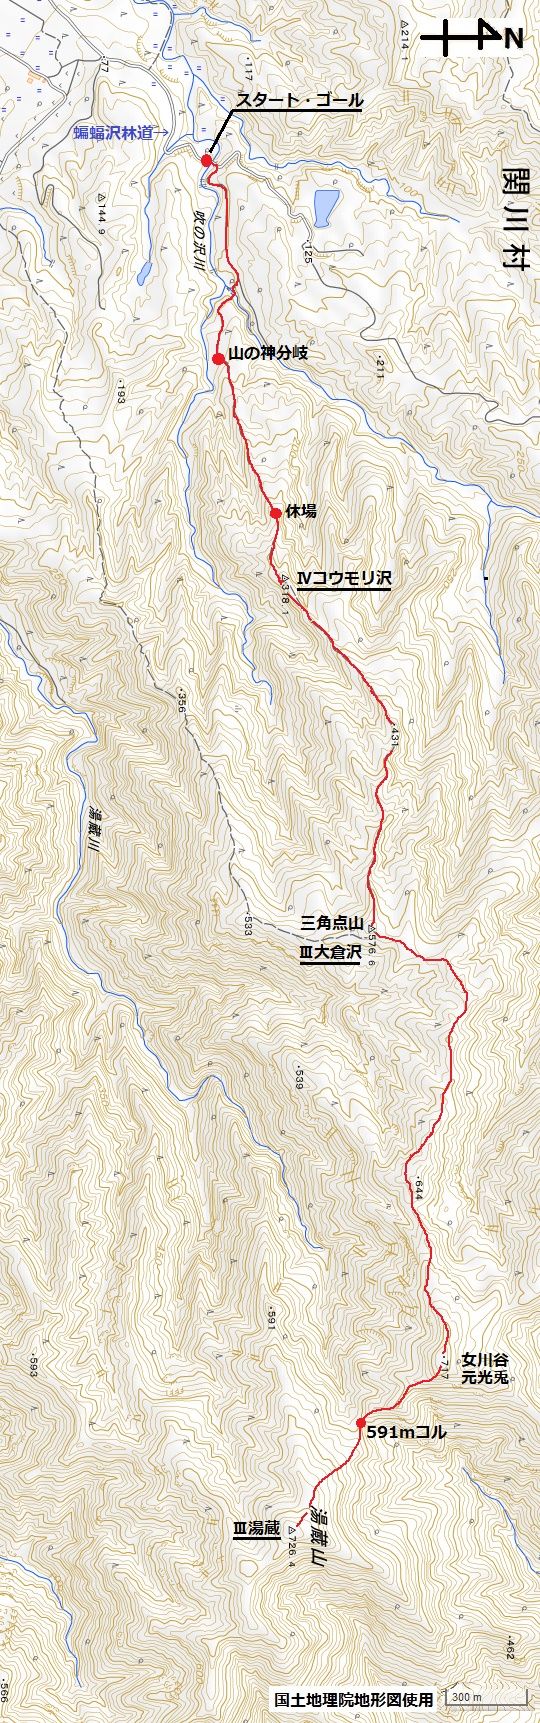 カテゴリ未分類 の記事一覧 新潟県の三角点を訪ねるブログ 目標1 000点 楽天ブログ